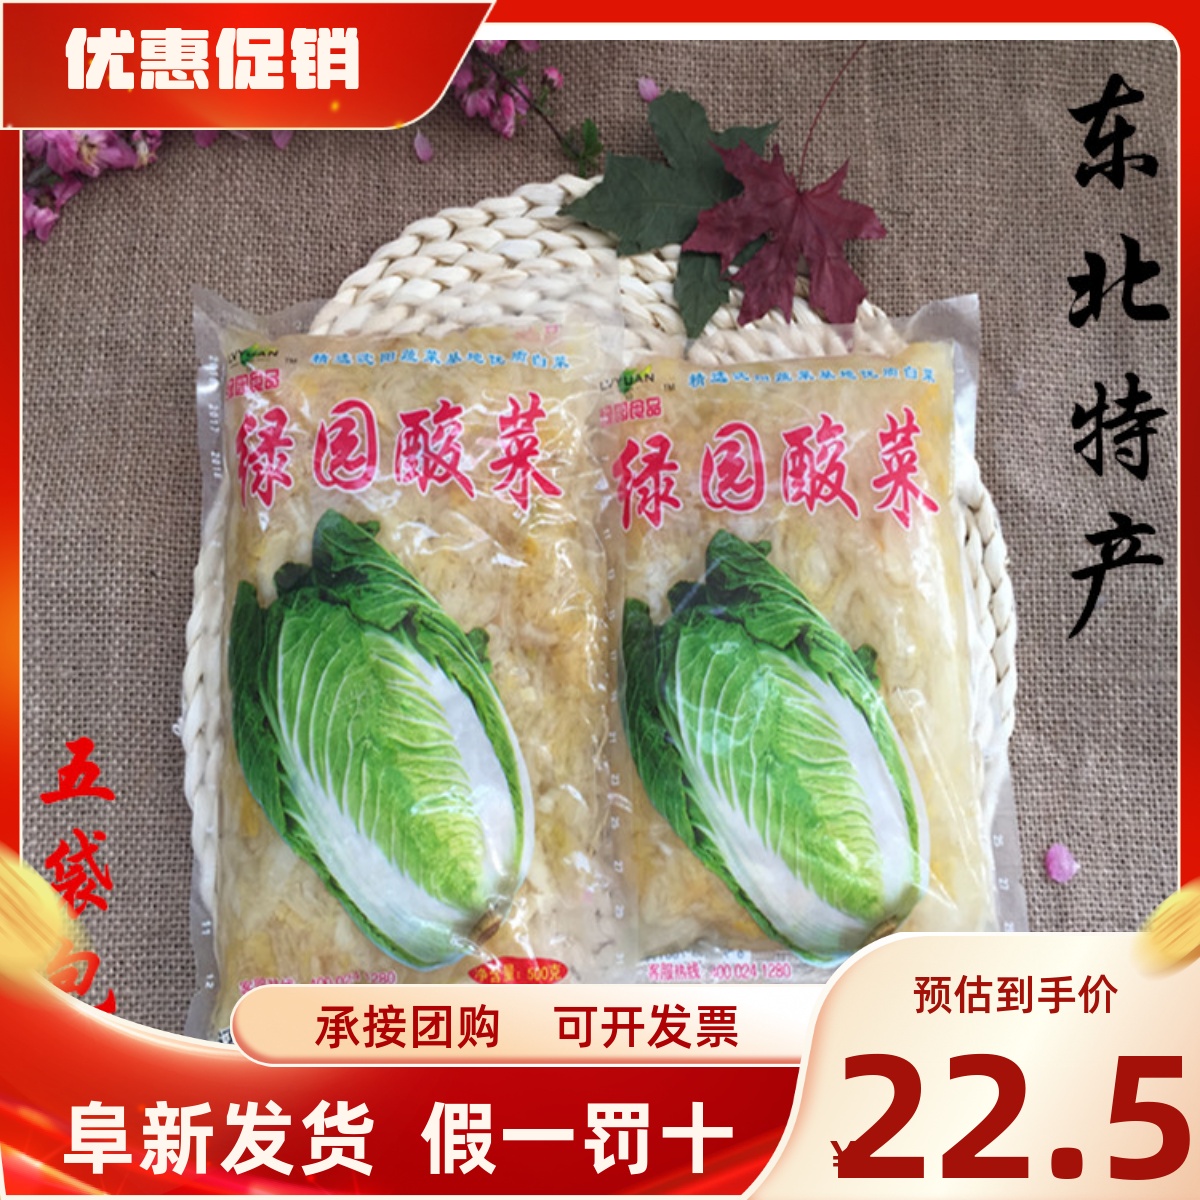 东北特产盛京绿园酸菜500克X5袋特价包邮